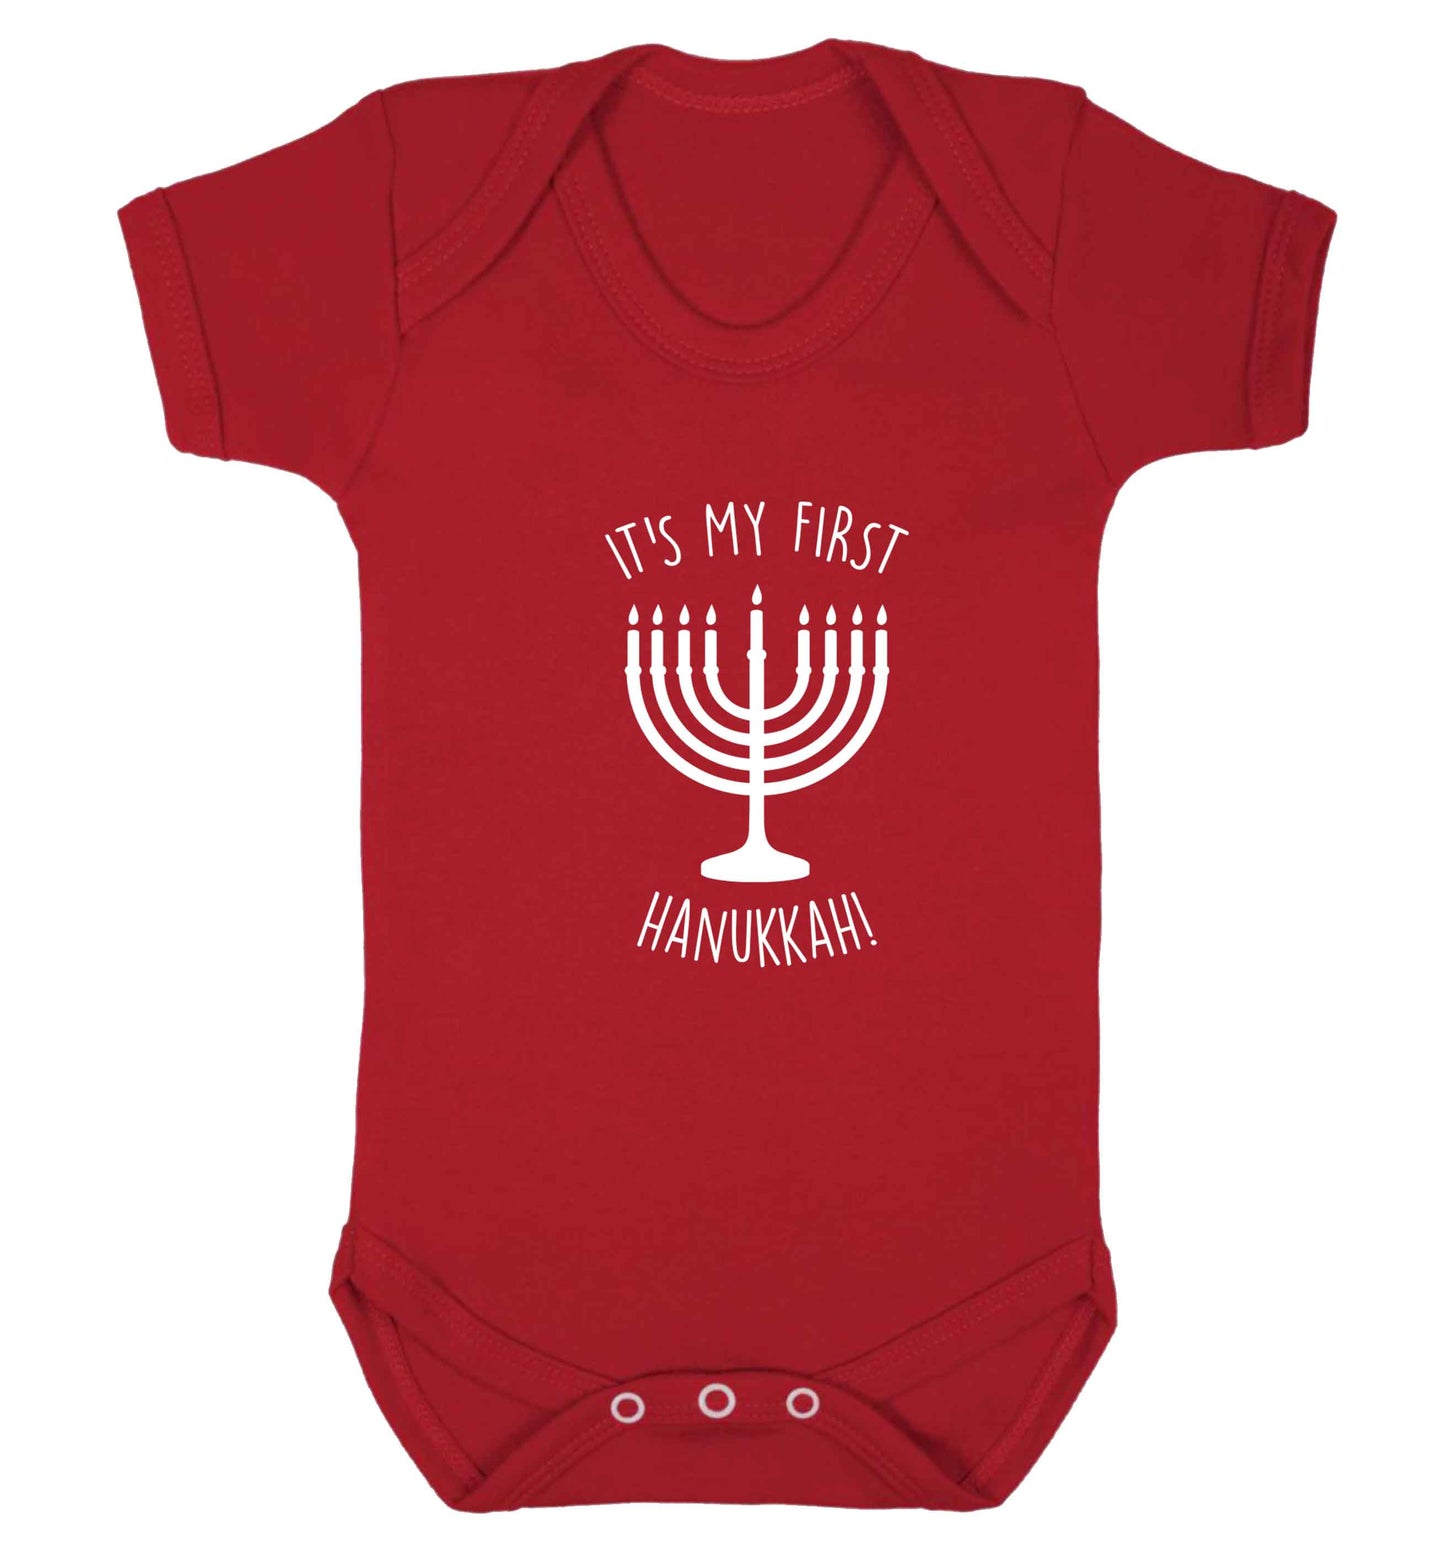 It's my first hanukkah baby vest red 18-24 months